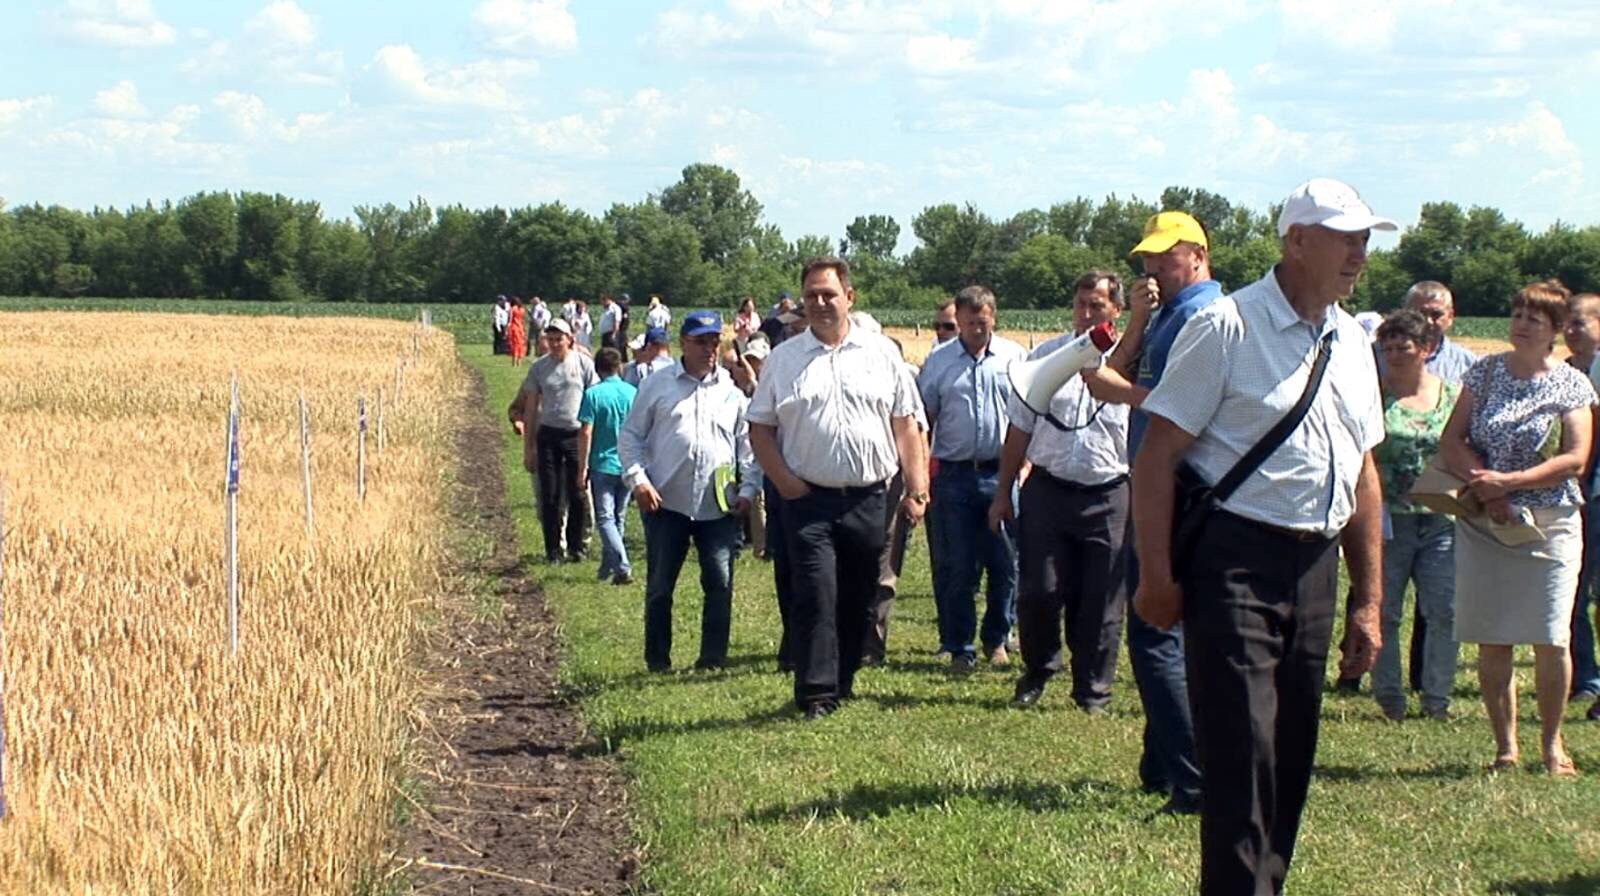 Всеукраїнський  День поля  2020  переконує: у співпраці з аграрною наукою можна досягти гарних результатів у сільськогосподарській діяльності попри всі кліматичні катаклізми